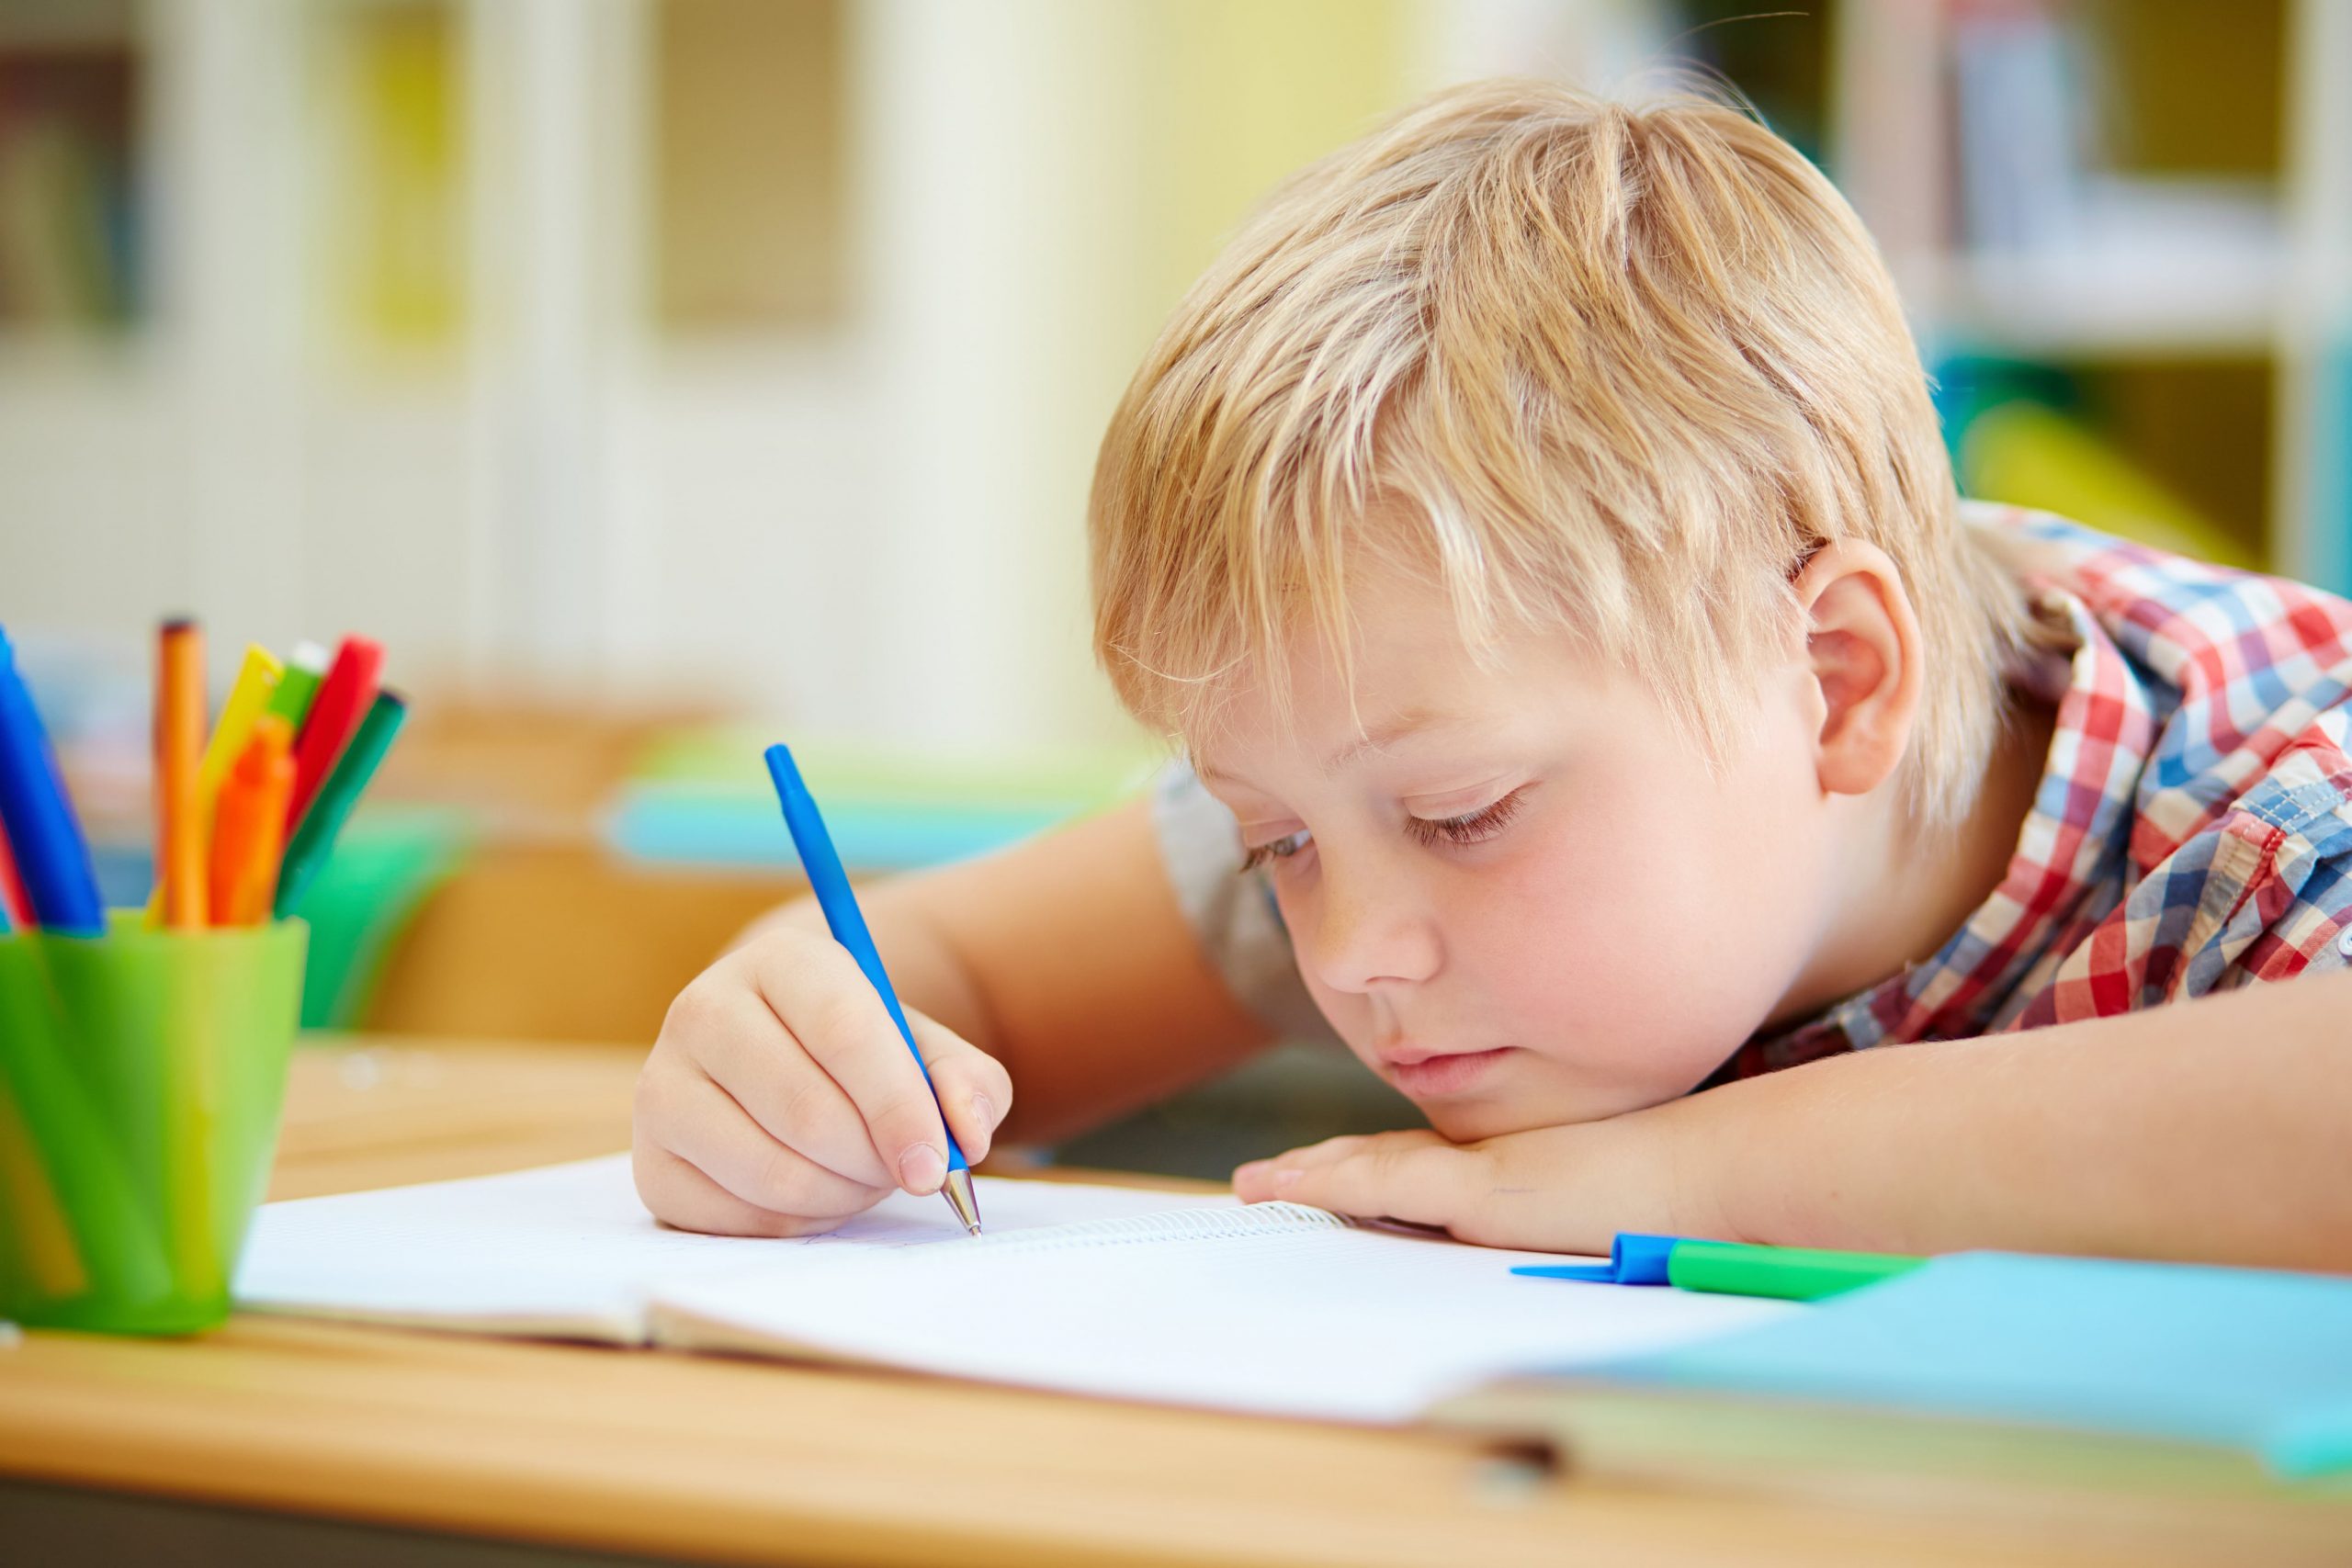 Bild von freepik zeigt ein Kind, das eine Fertigkeit schreibt, bei der therapinum helfen möchte